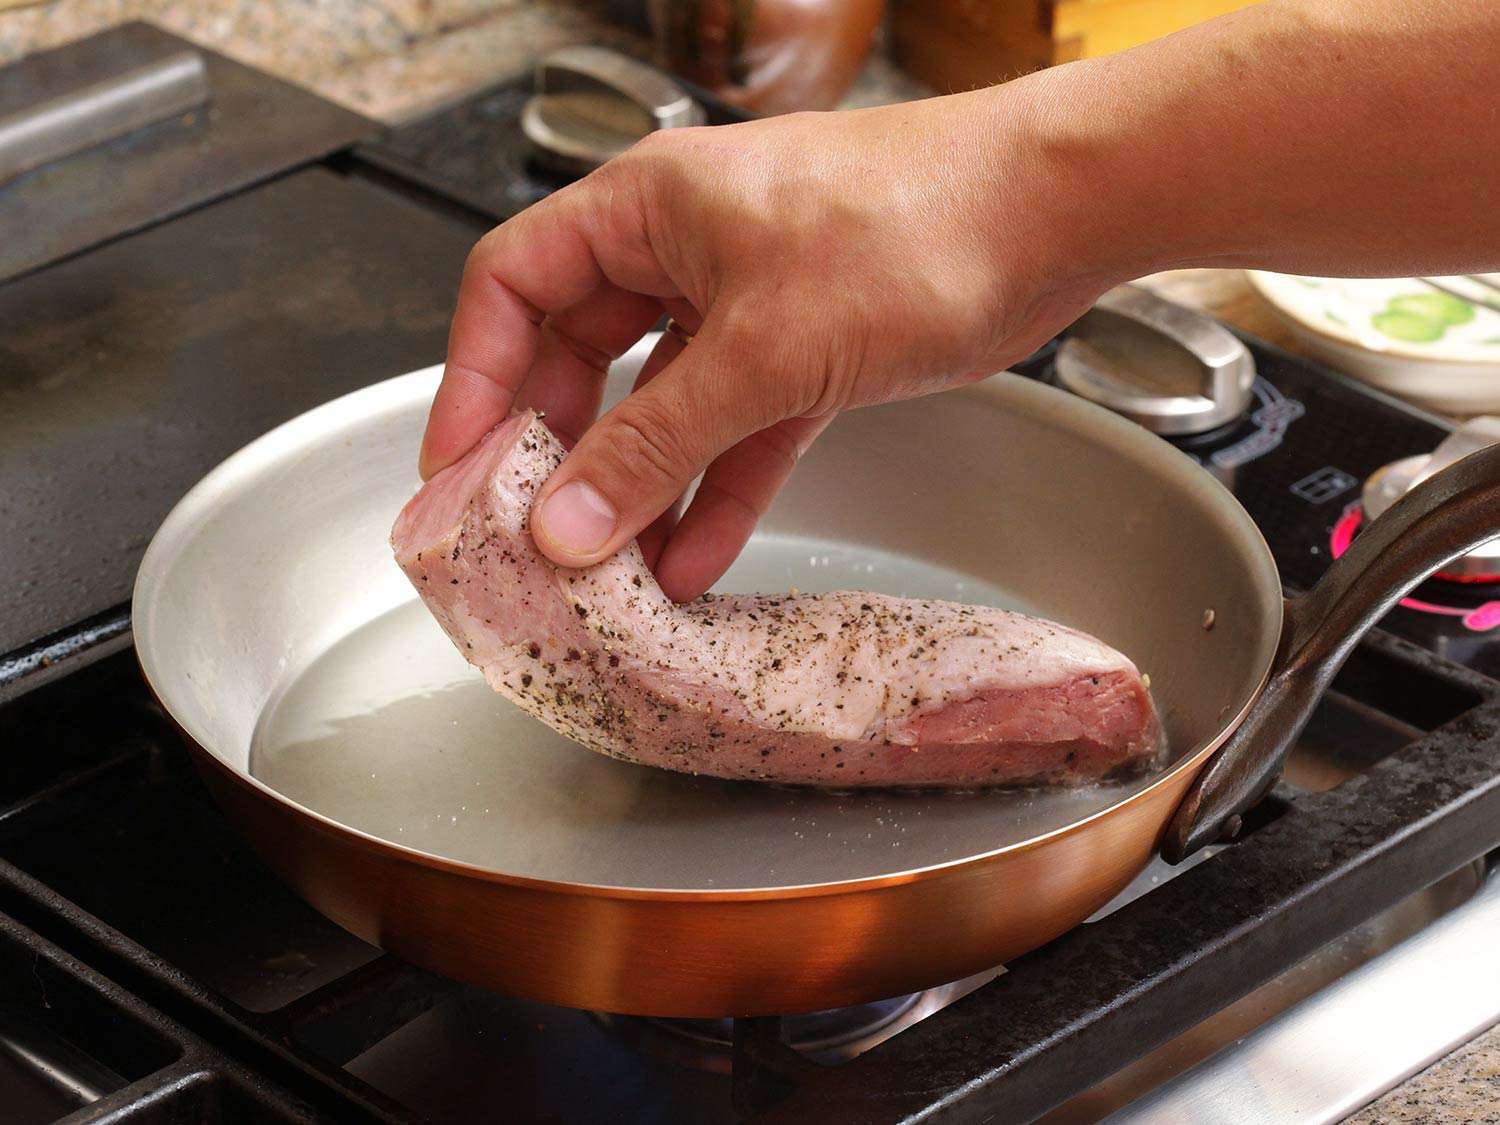 将真空烹调的里脊肉放入热的、涂了油的煎锅中煎至焦糊后即可食用。